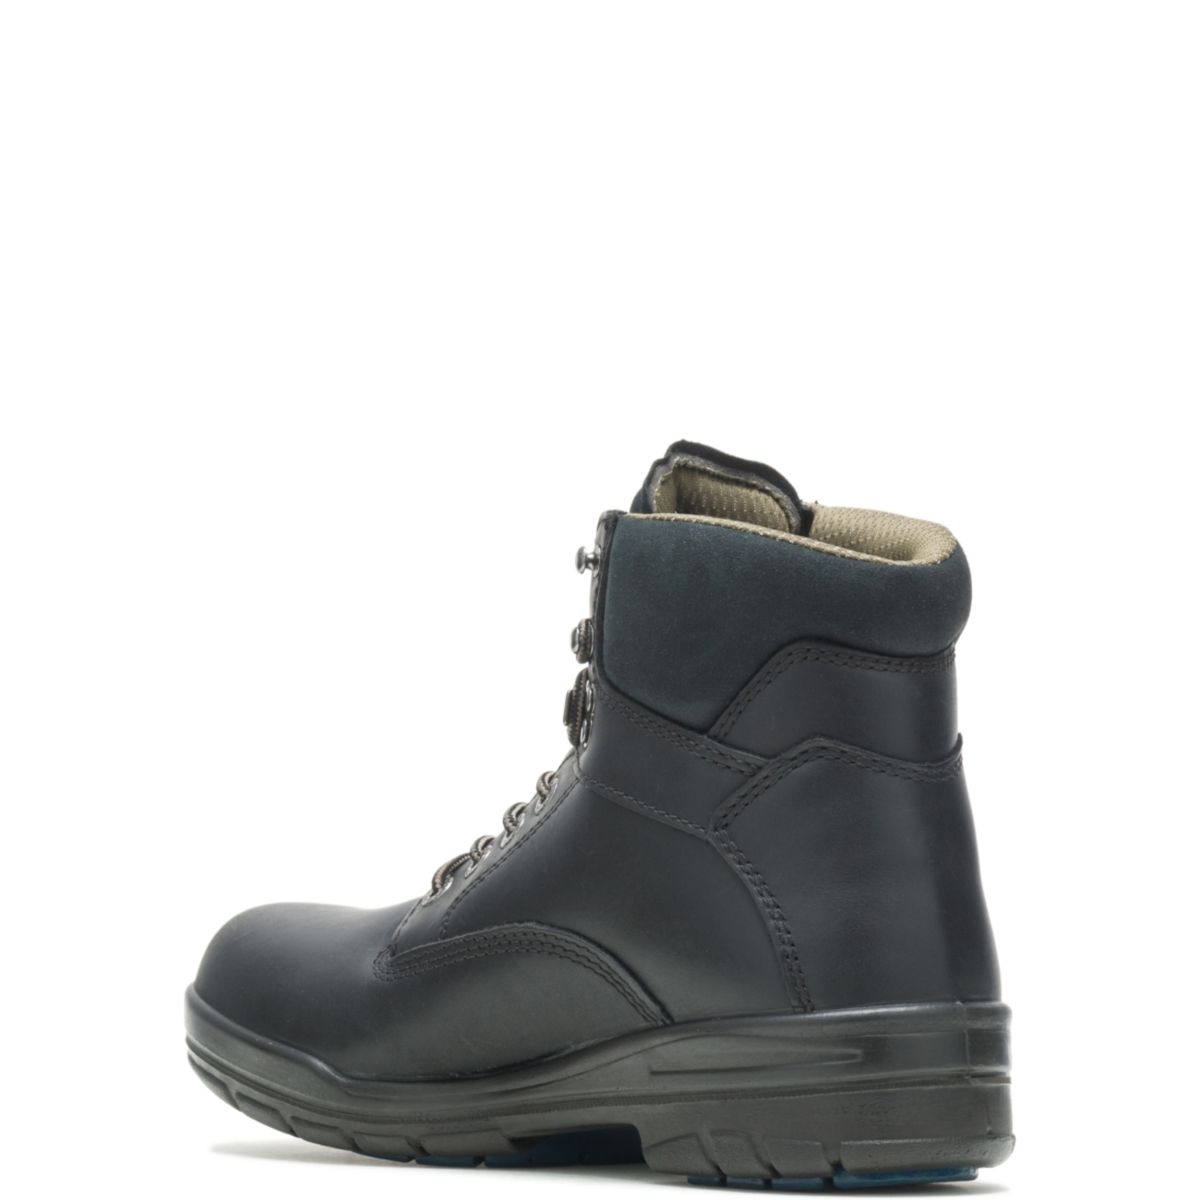 WOLVERINE Men's 6 DuraShocksÂ® Slip Resistant Direct-Attached Lined Soft Toe Work Boot Black - W03123 14 WIDE BLACK - BLACK, 10